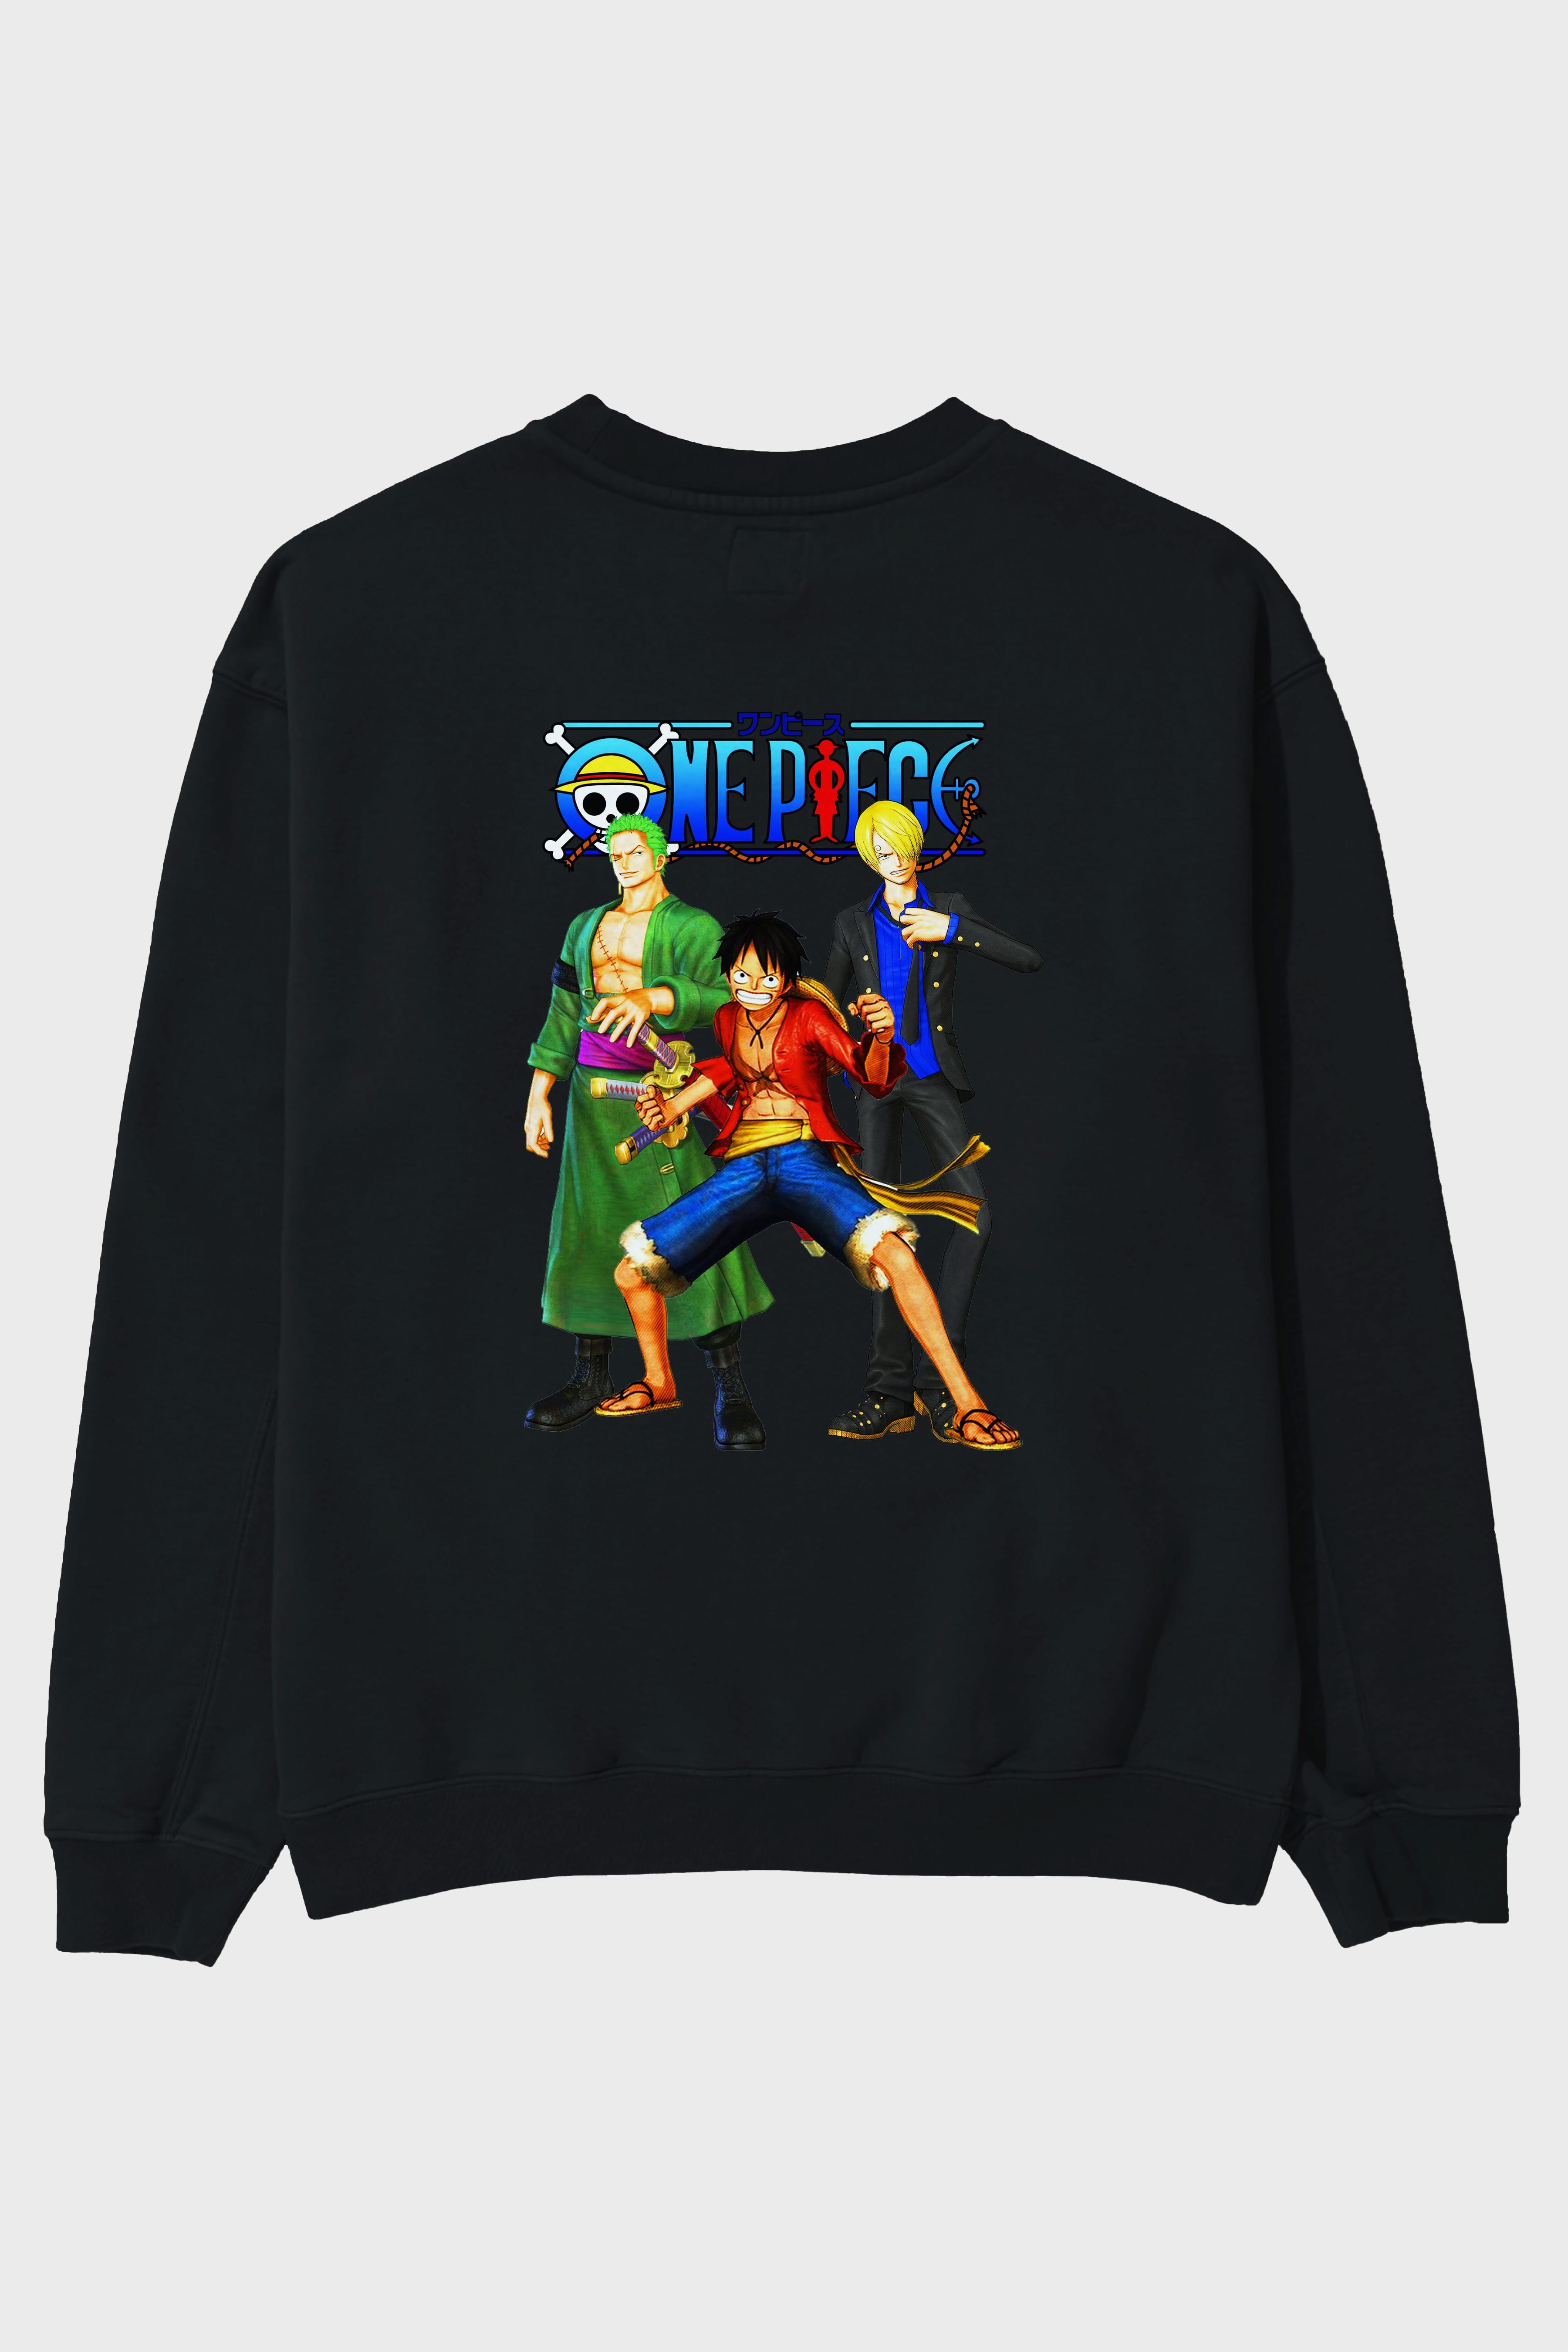 Luffy Sanji Zoro Arka Baskılı Anime Oversize Sweatshirt Erkek Kadın Unisex